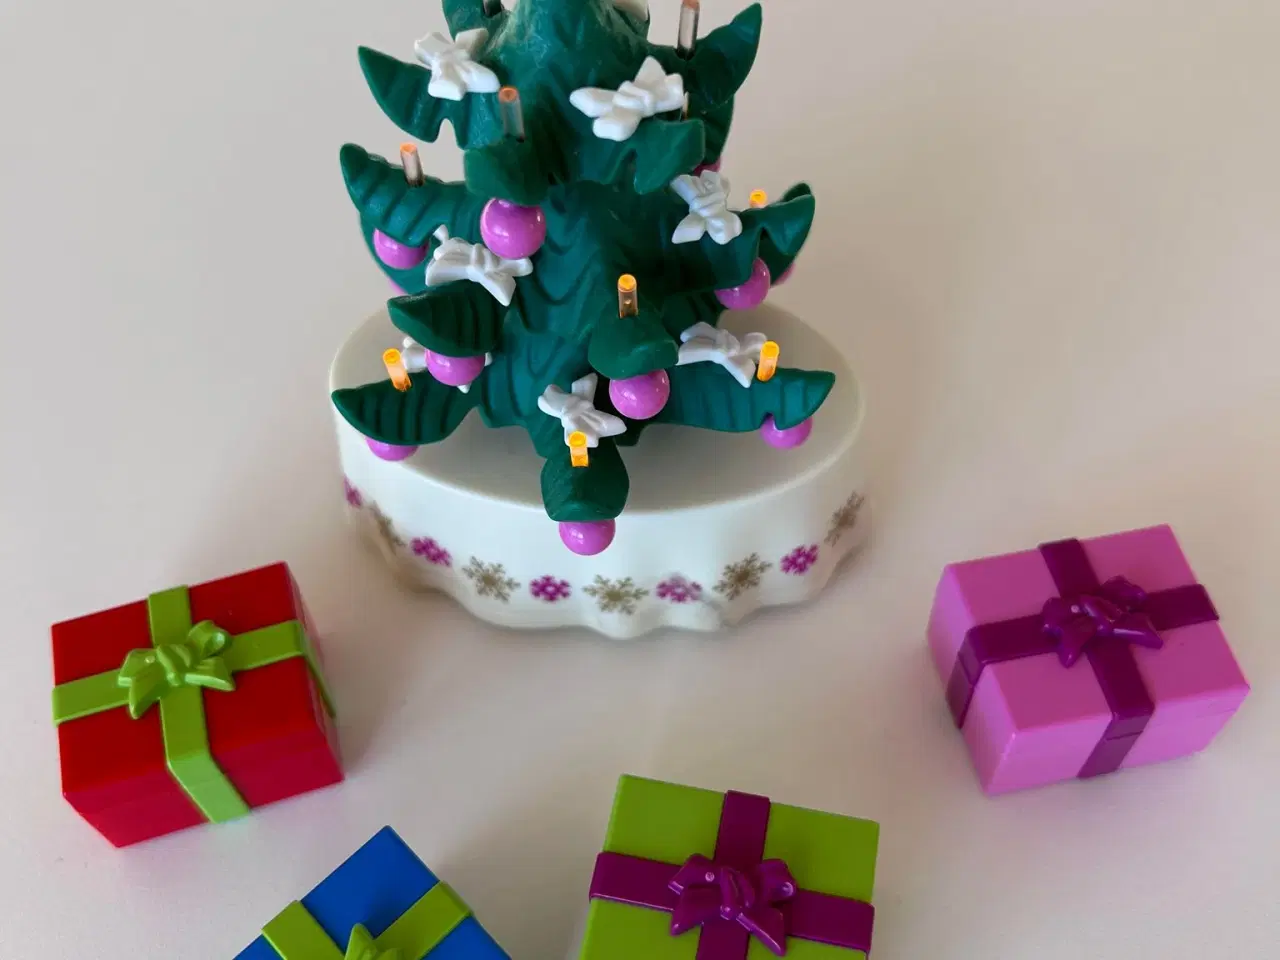 Billede 6 - Playmobil figurer og juletræ med gaver